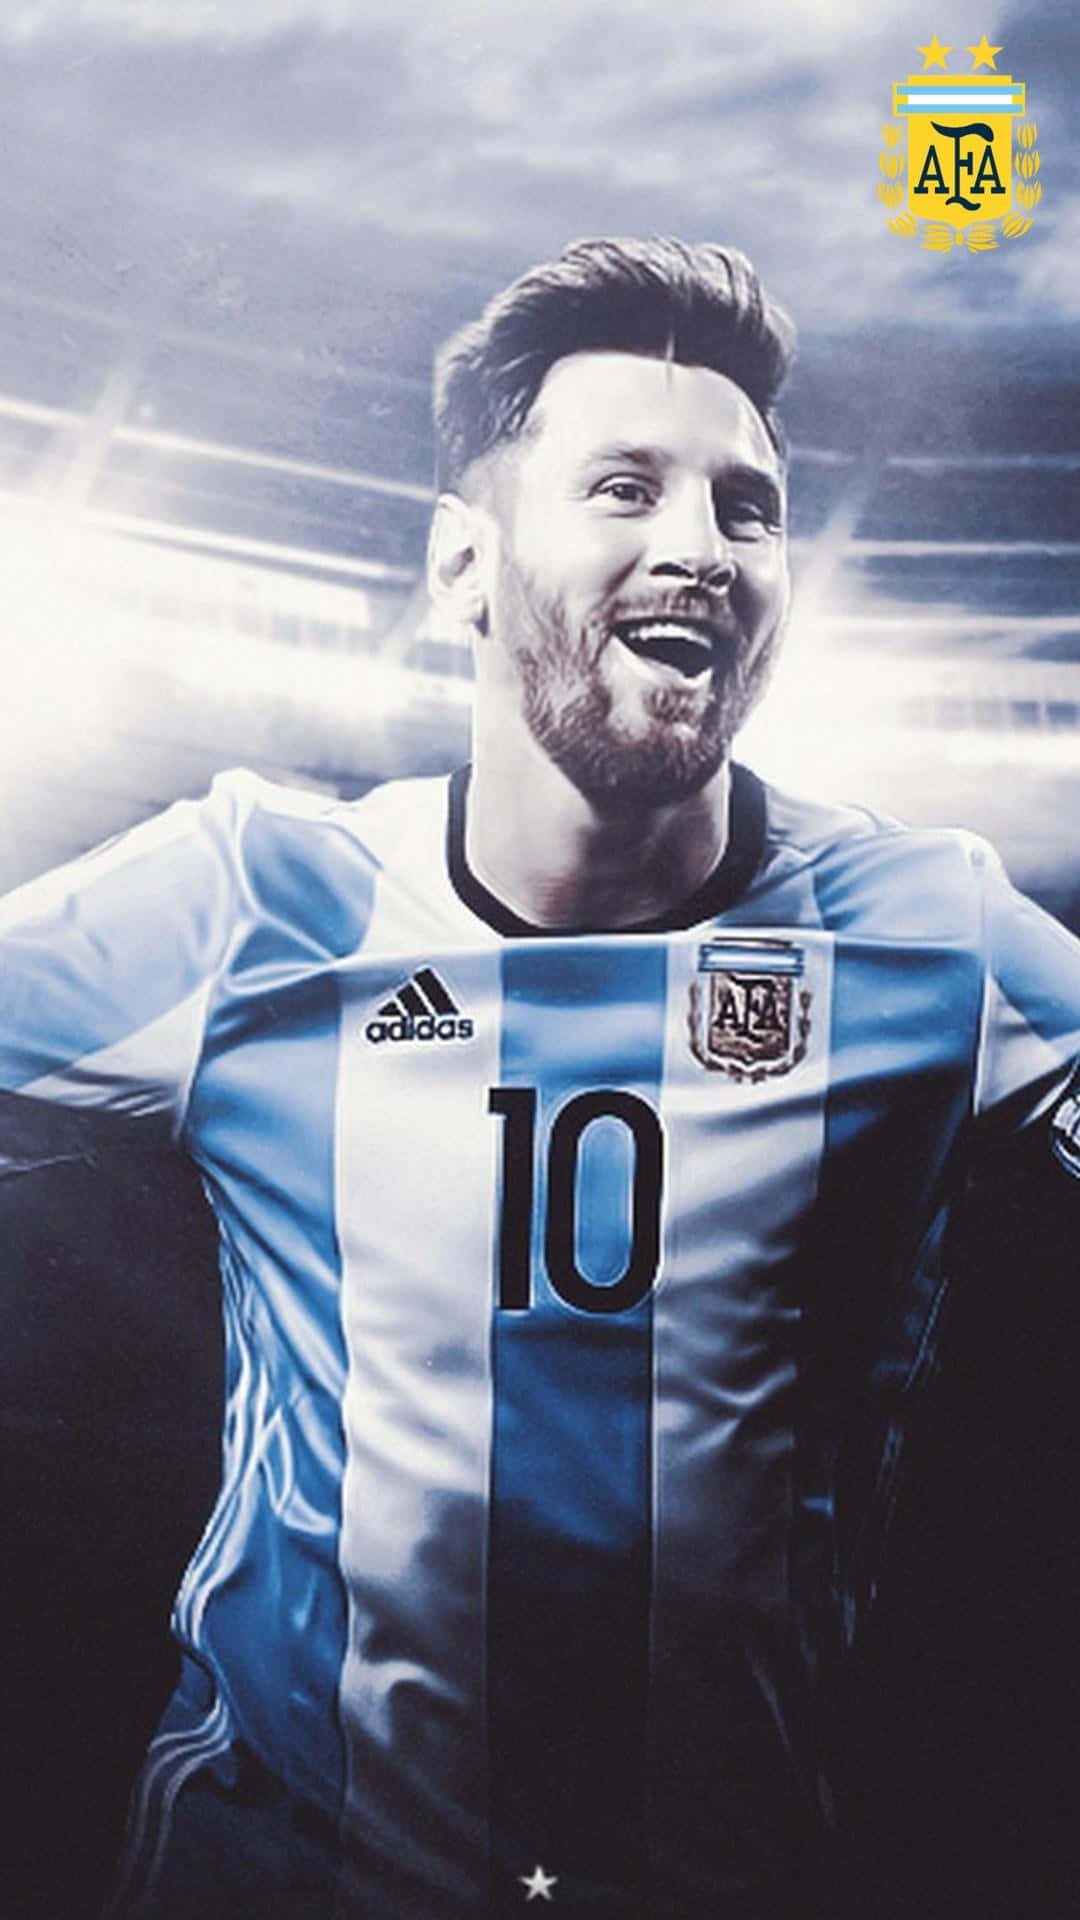 Denikoniska Lionel Messi Pryder Miljontals Iphones Globalt. Wallpaper